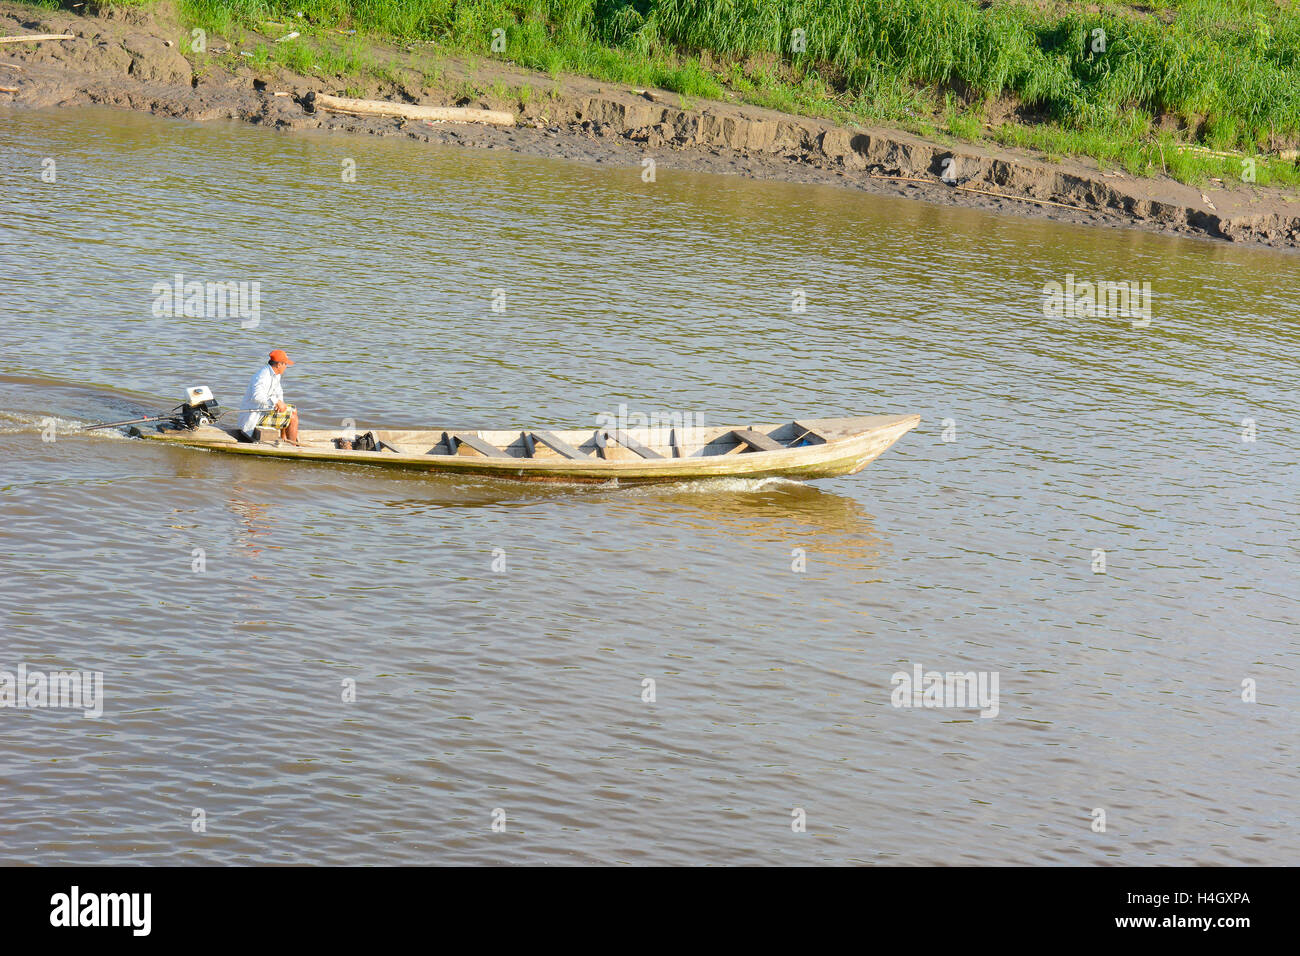 IQUITOS, PERU - 16. Oktober 2015: Fischer am Fluss Itaya. Angeln ist eine Quelle von Nahrung und Handel im peruanischen Amazonasgebiet. Stockfoto